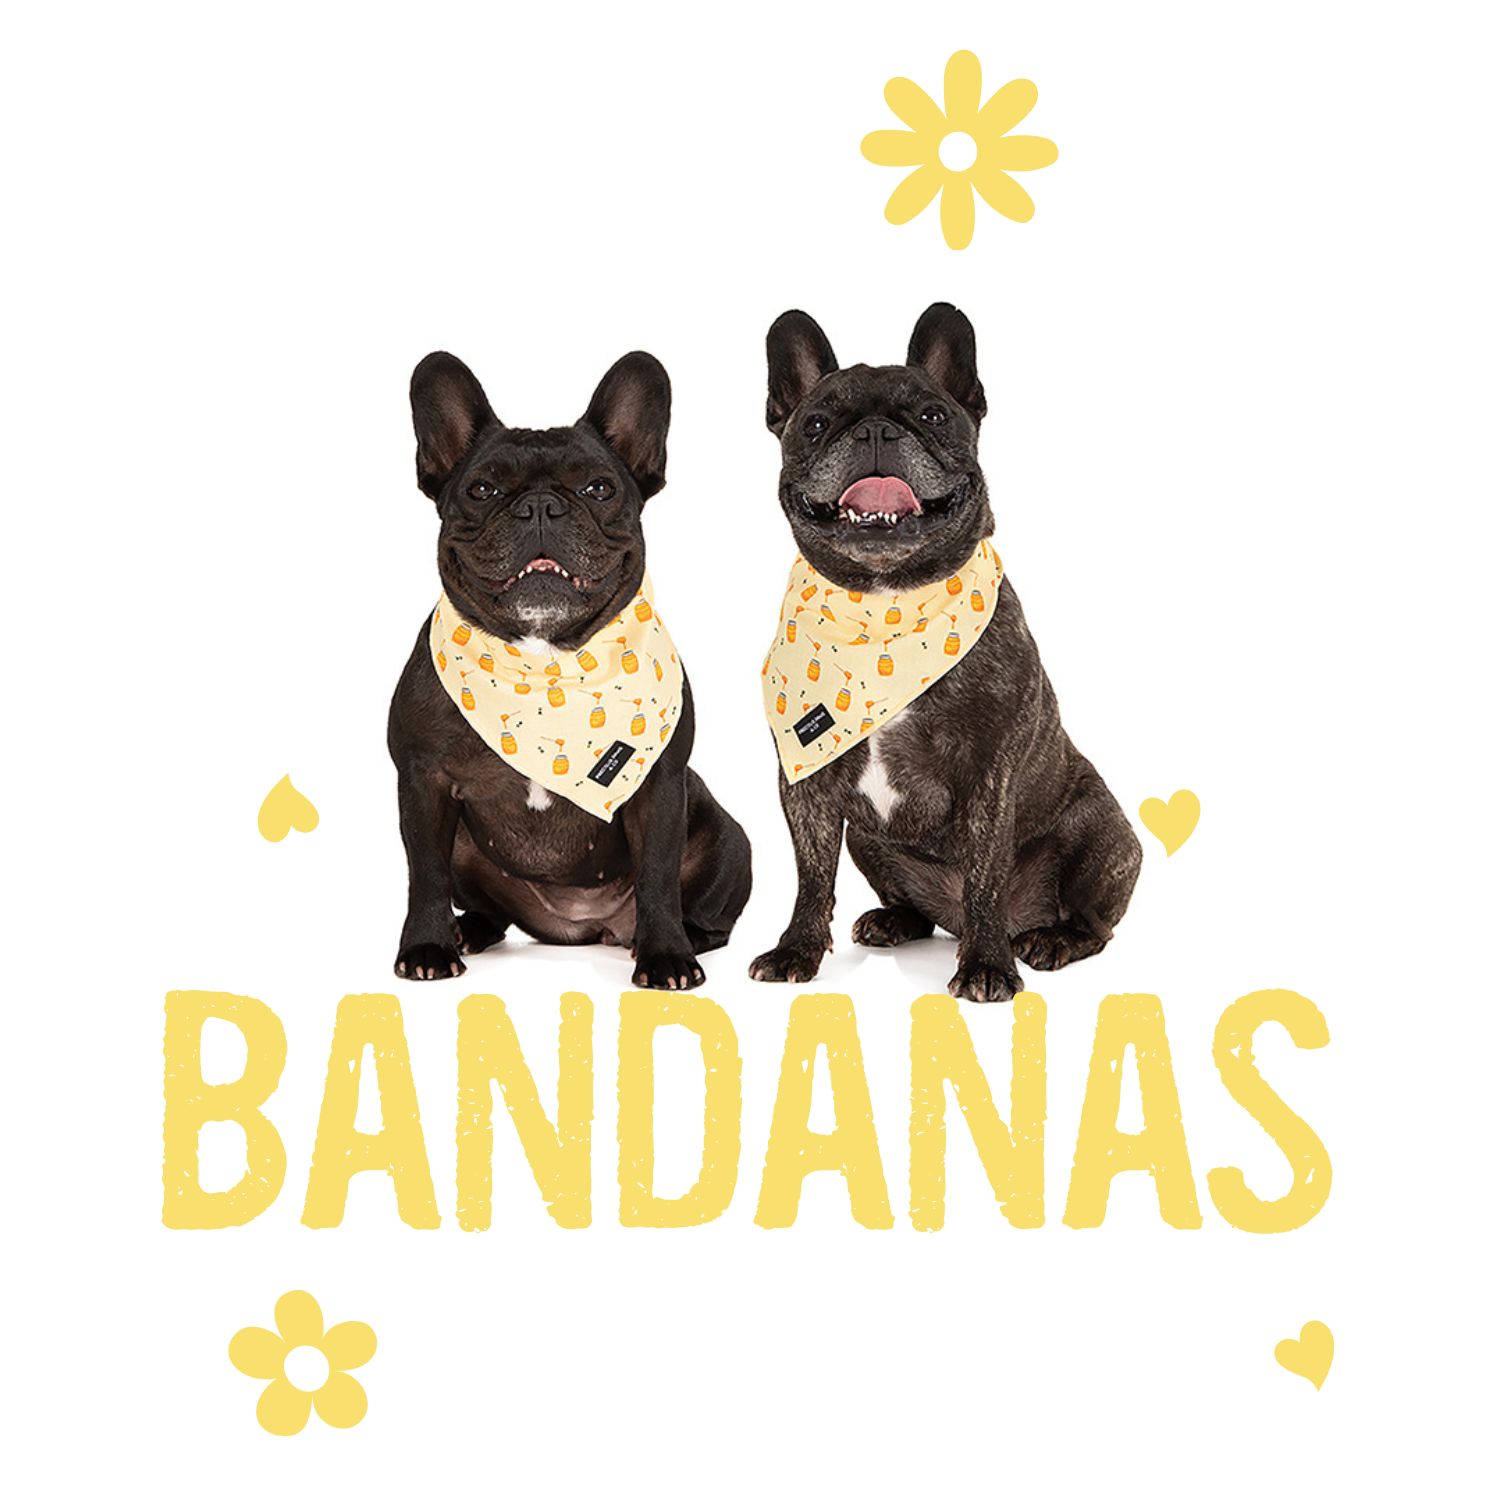 Dog Bandanas